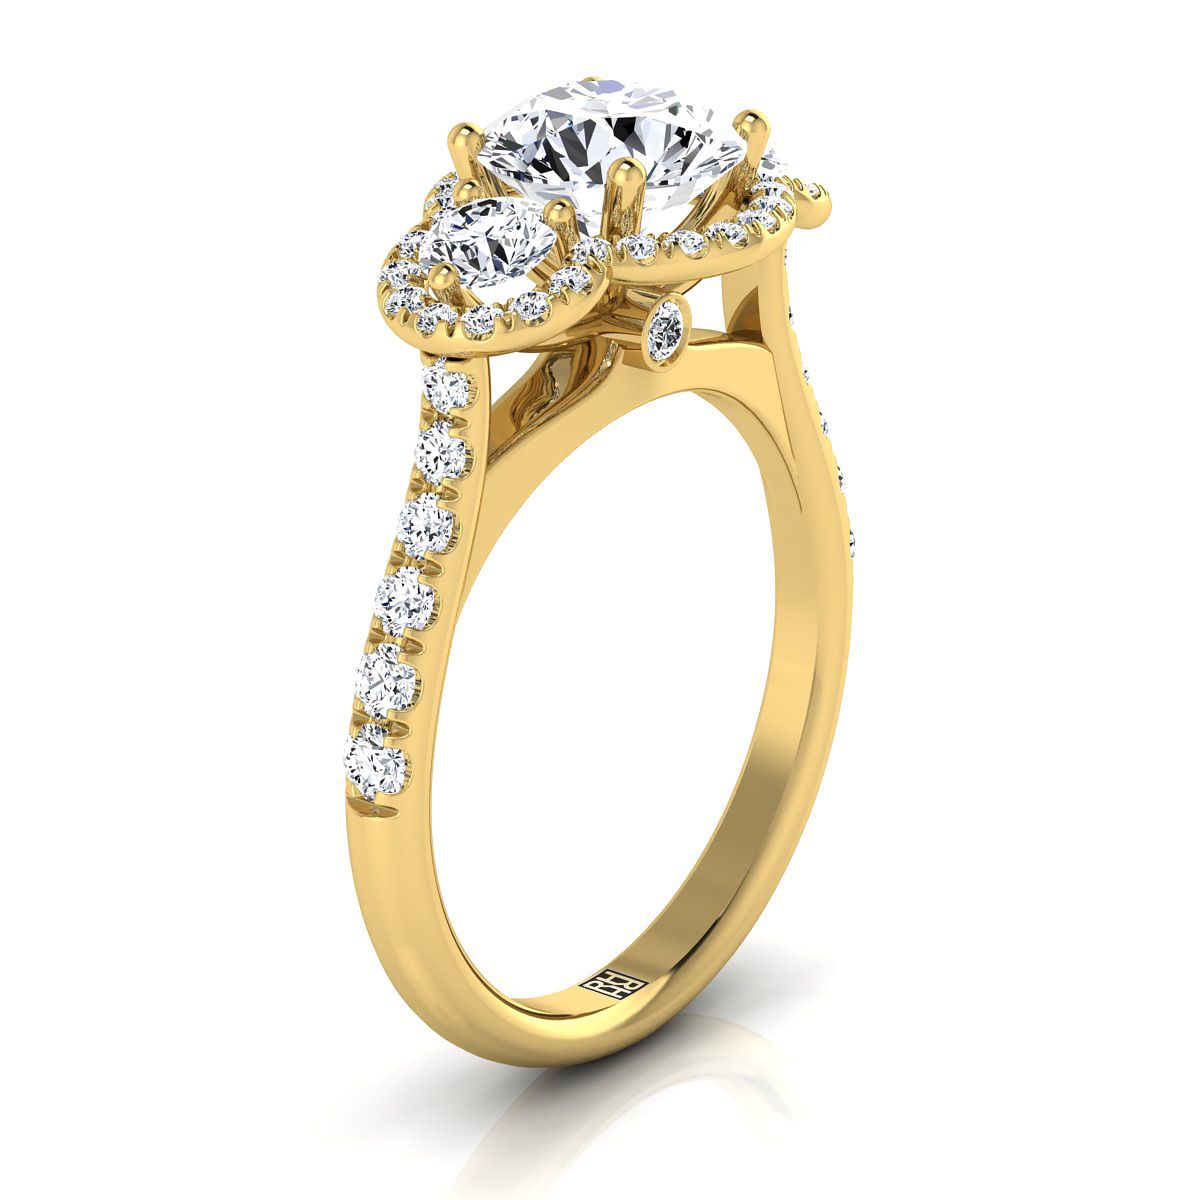 18K Yellow Gold Round Brilliant Diamond อมตะสามหิน Halo พร้อมแหวนหมั้นฝรั่งเศส -3/4ctw